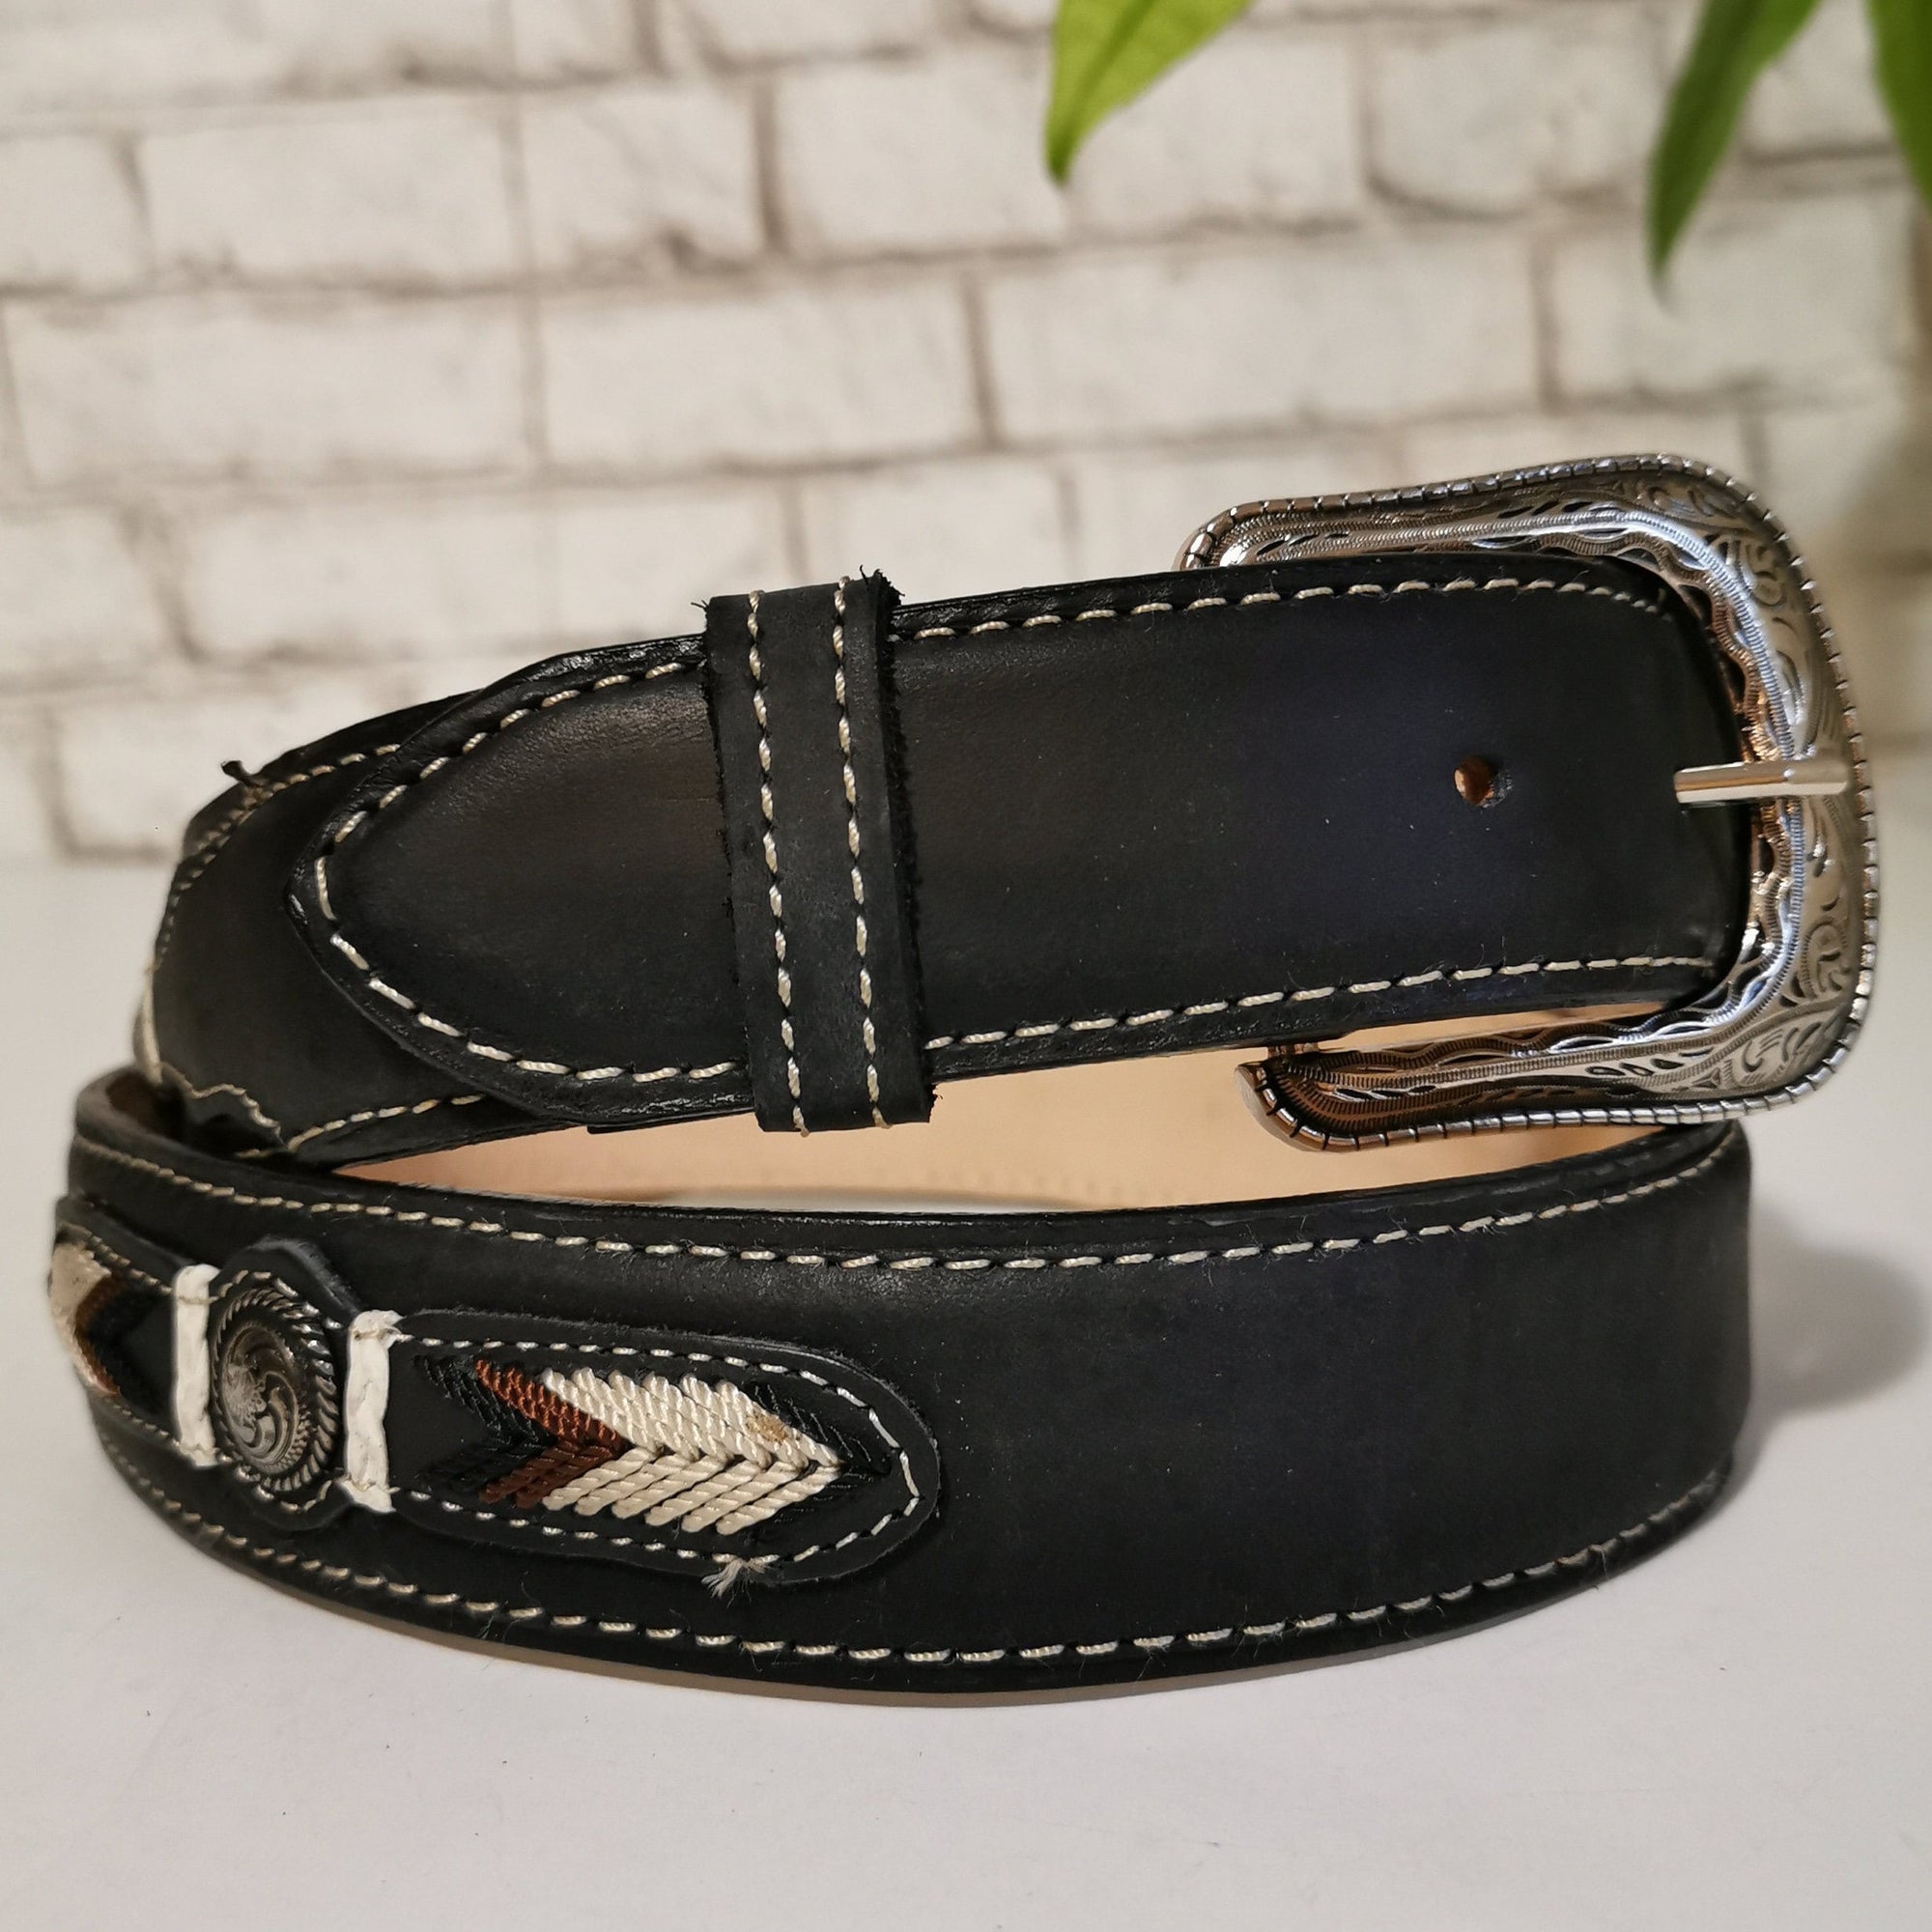 Cinturón occidental para hombre, cinturón de cuero negro hecho a mano, cinturón negro para hombre, cinturón vaquero